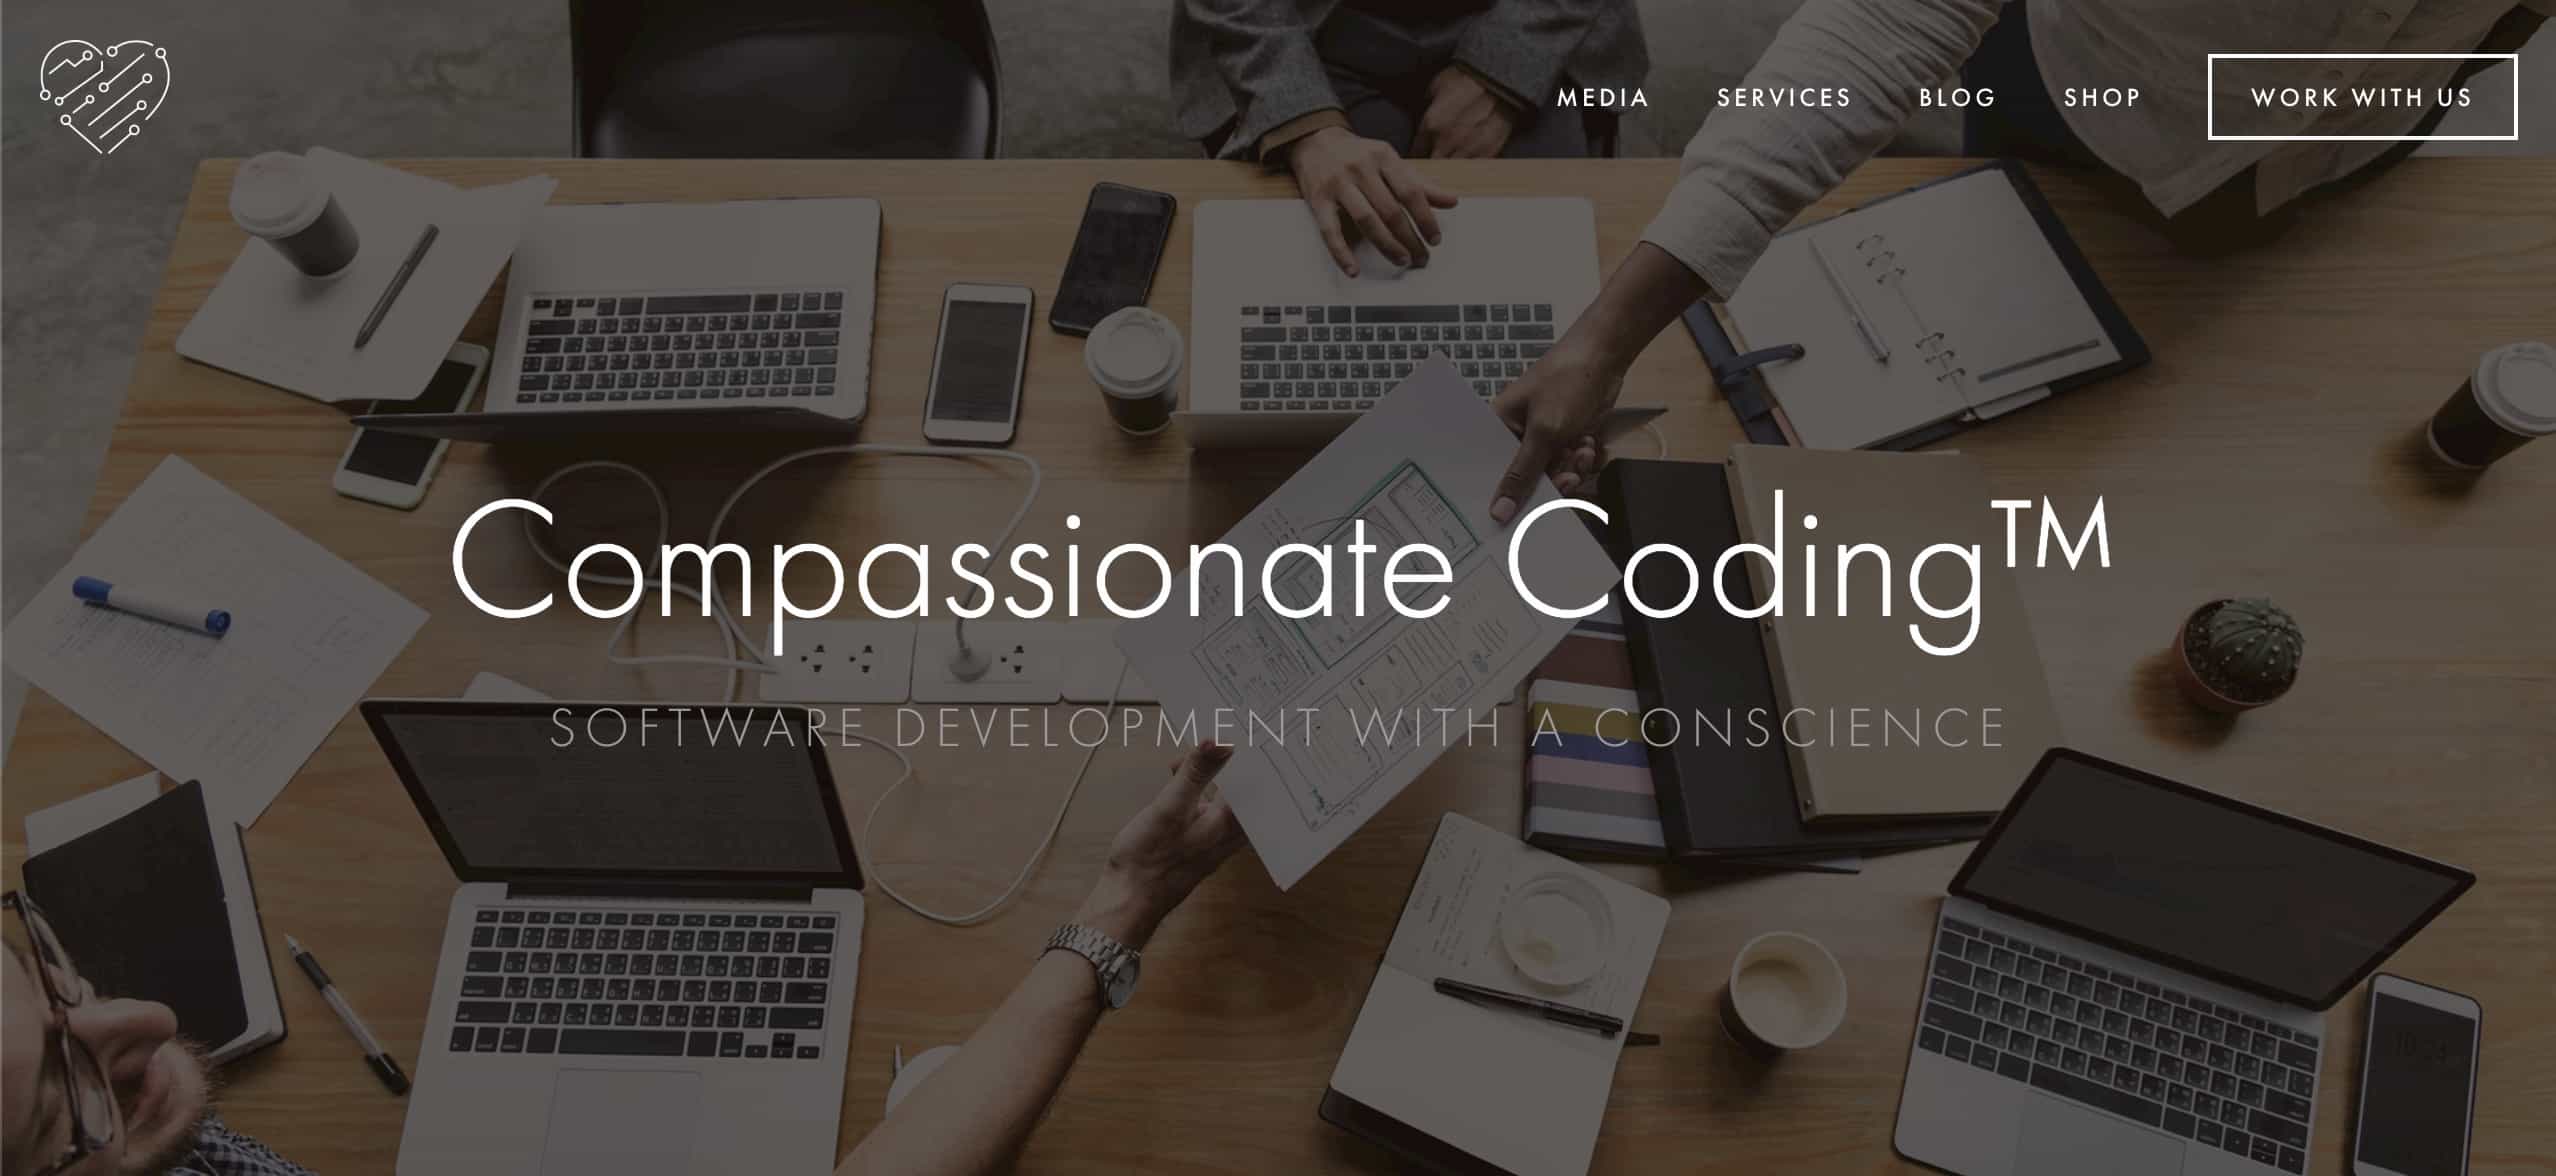 Compassionate Coding.